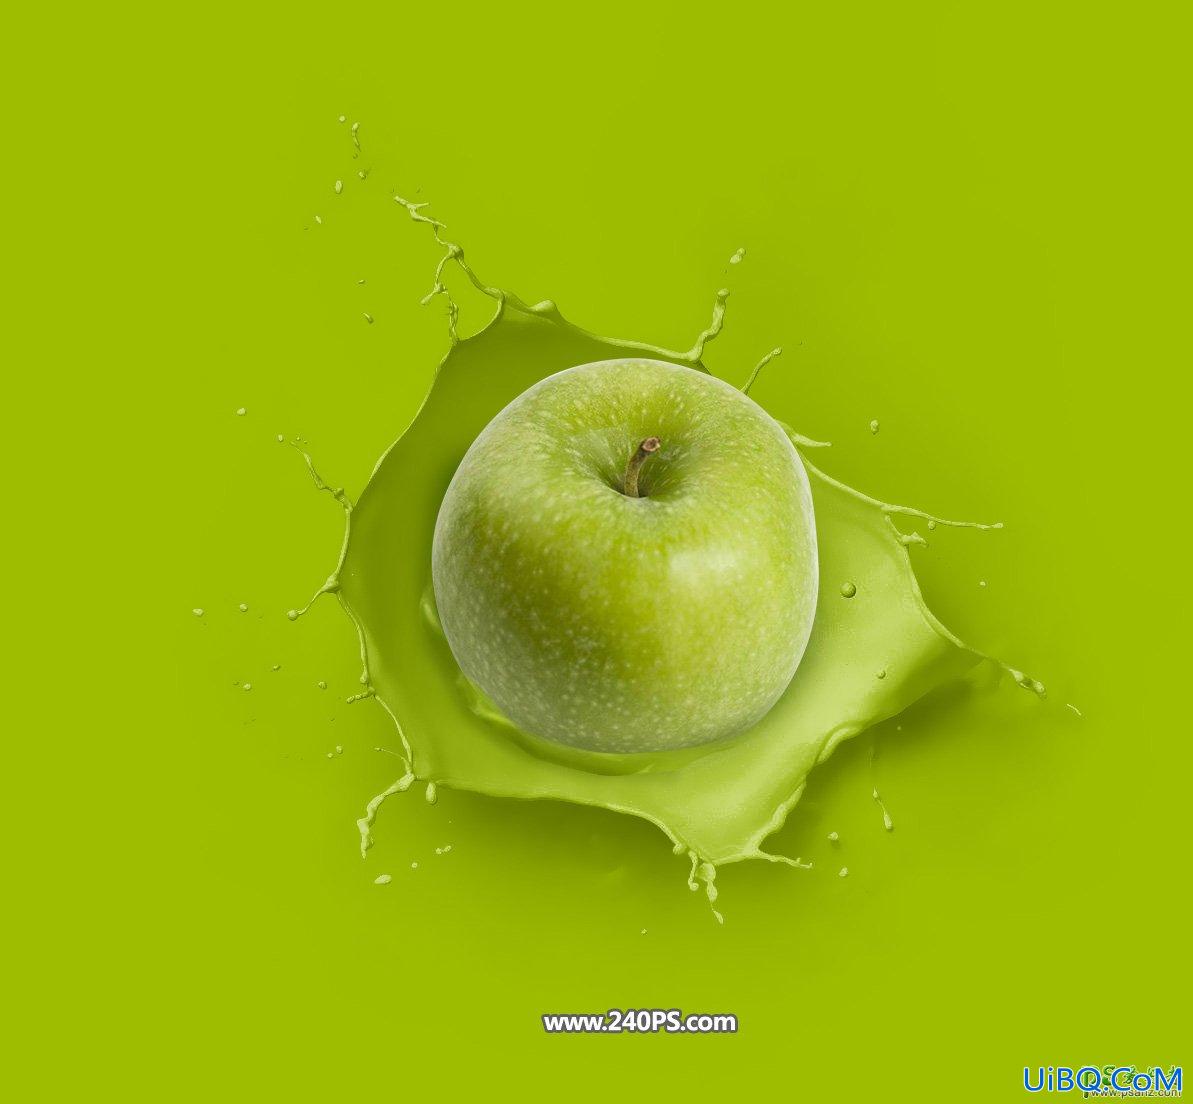 PS创意合成坠入绿色油漆中的青苹果，苹果掉入绿色液体瞬